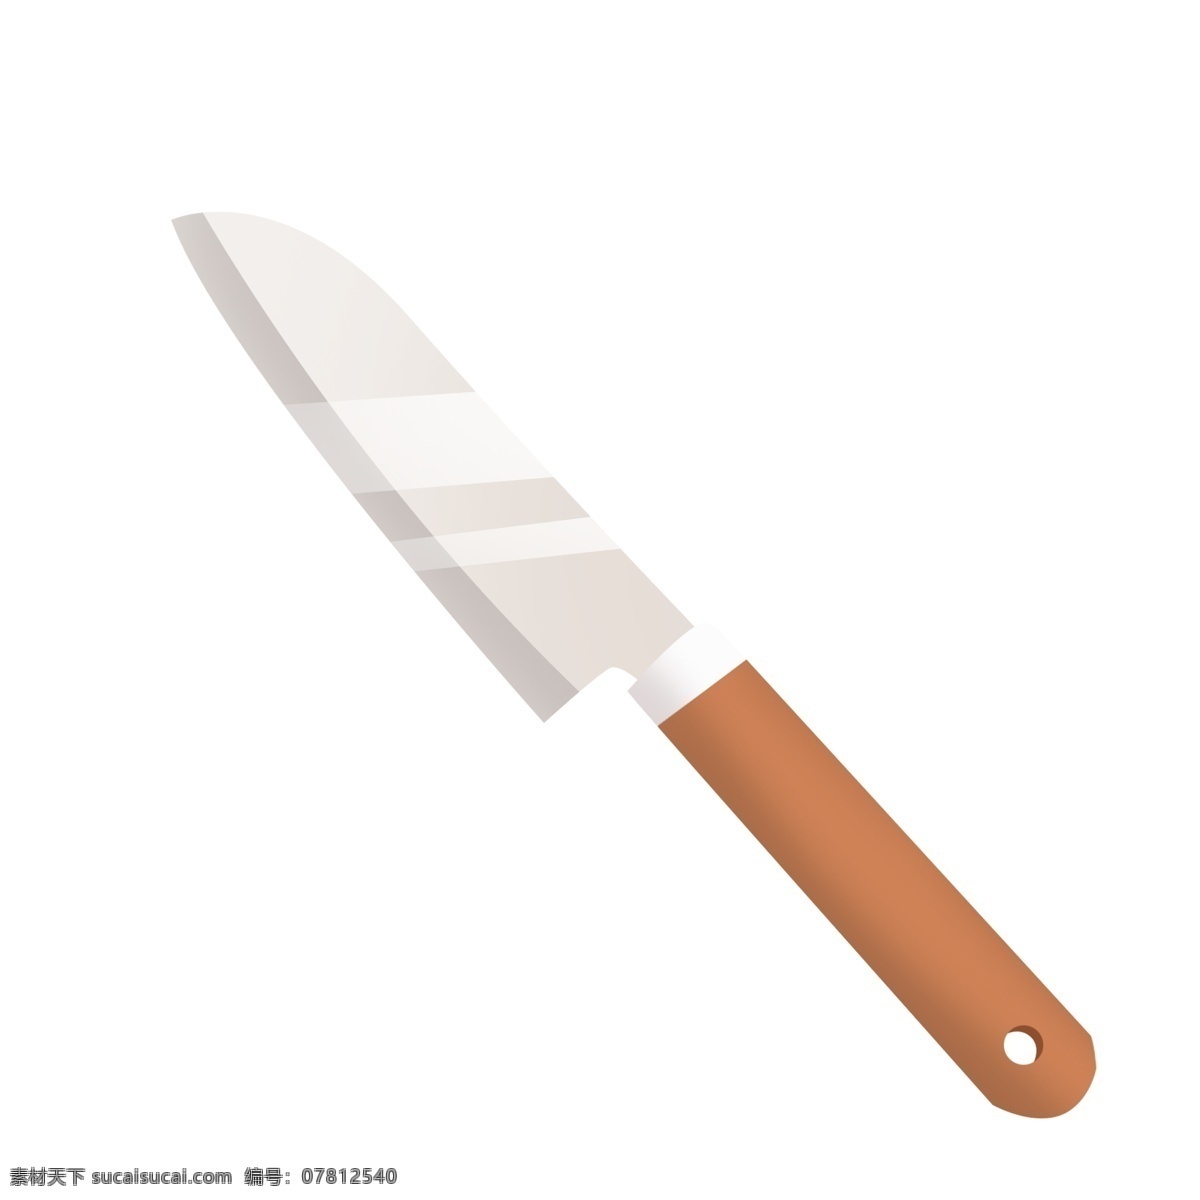 橙色 精致 水果刀 透明 底 银色 小刀 简约小刀 黑色刀柄 简约水果刀 质感 灰色小刀 锋利小刀